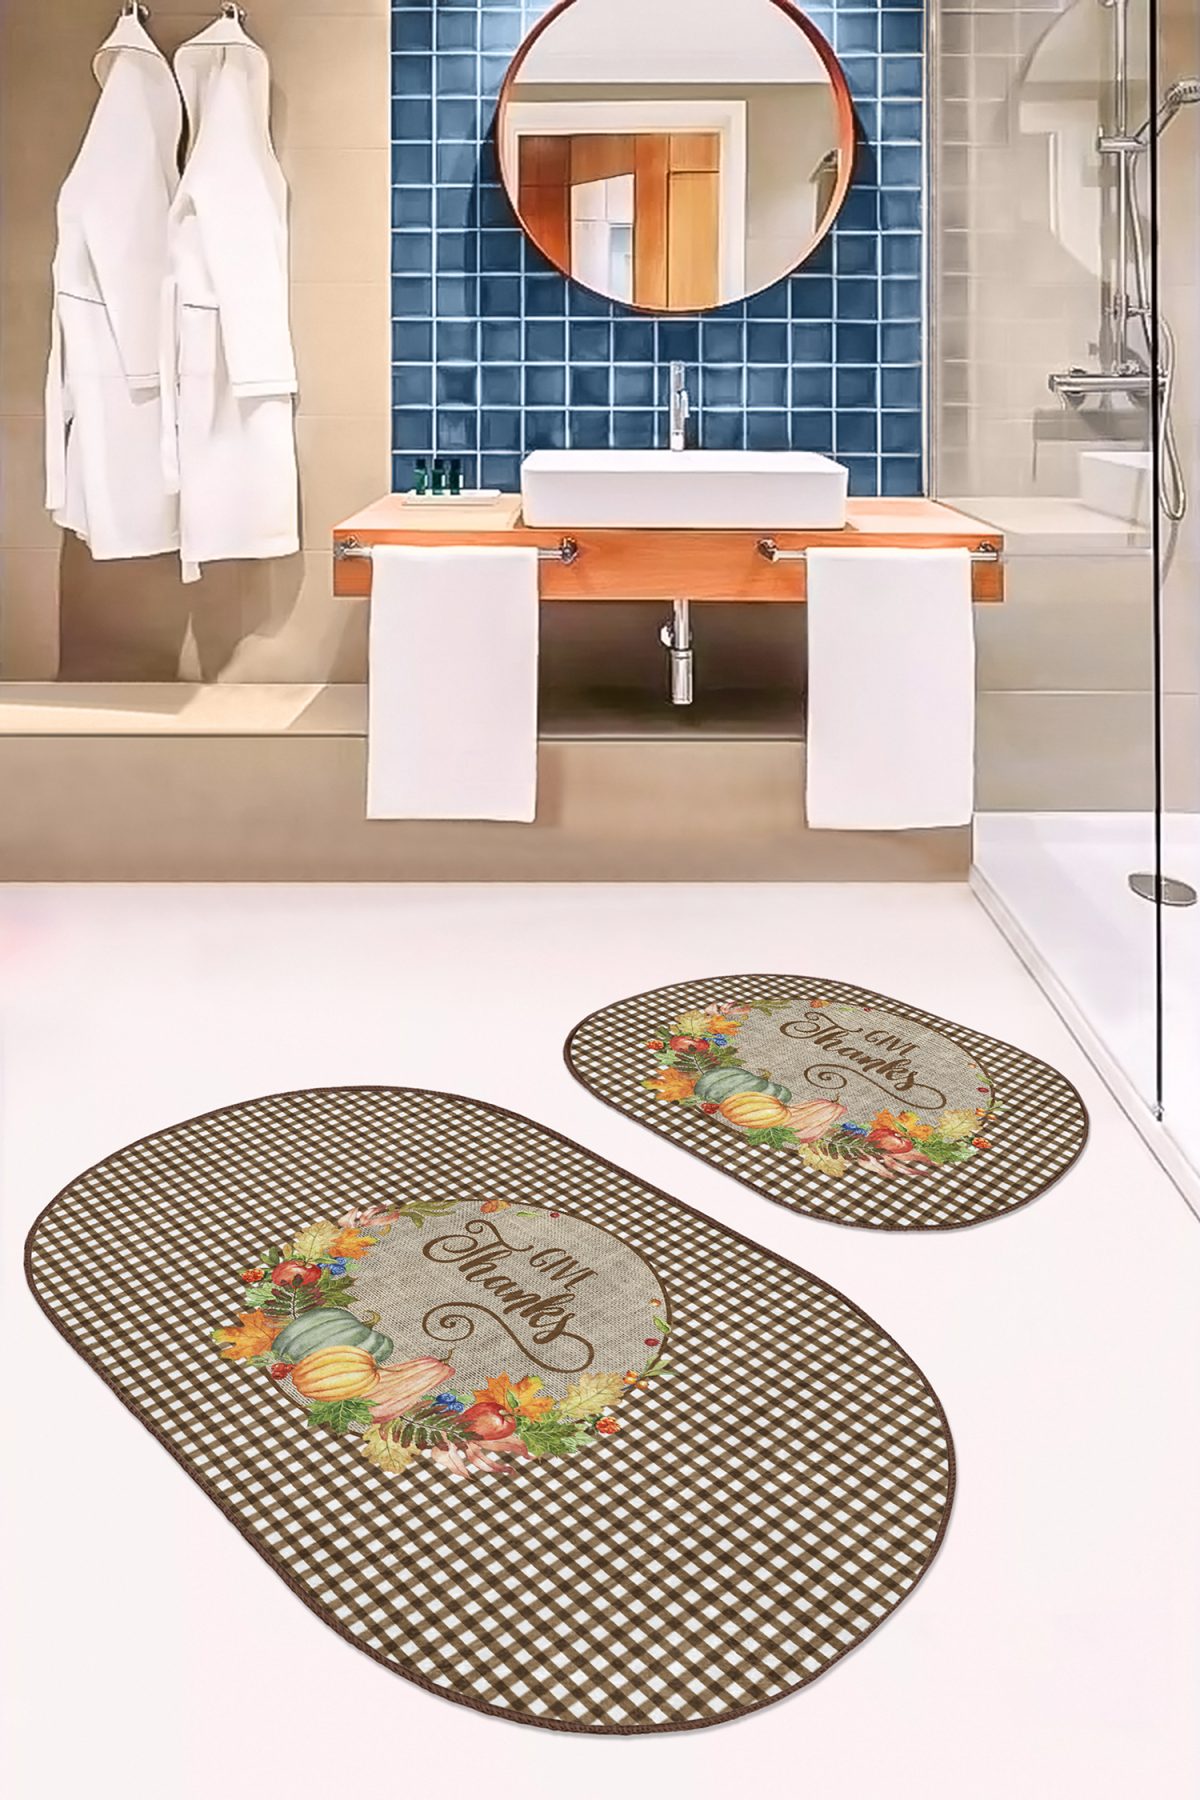 Kabak Temalı Kahve Ekose Tasarımlı 2'li Oval Mutfak Paspas Takımı & Banyo Halısı Seti Realhomes